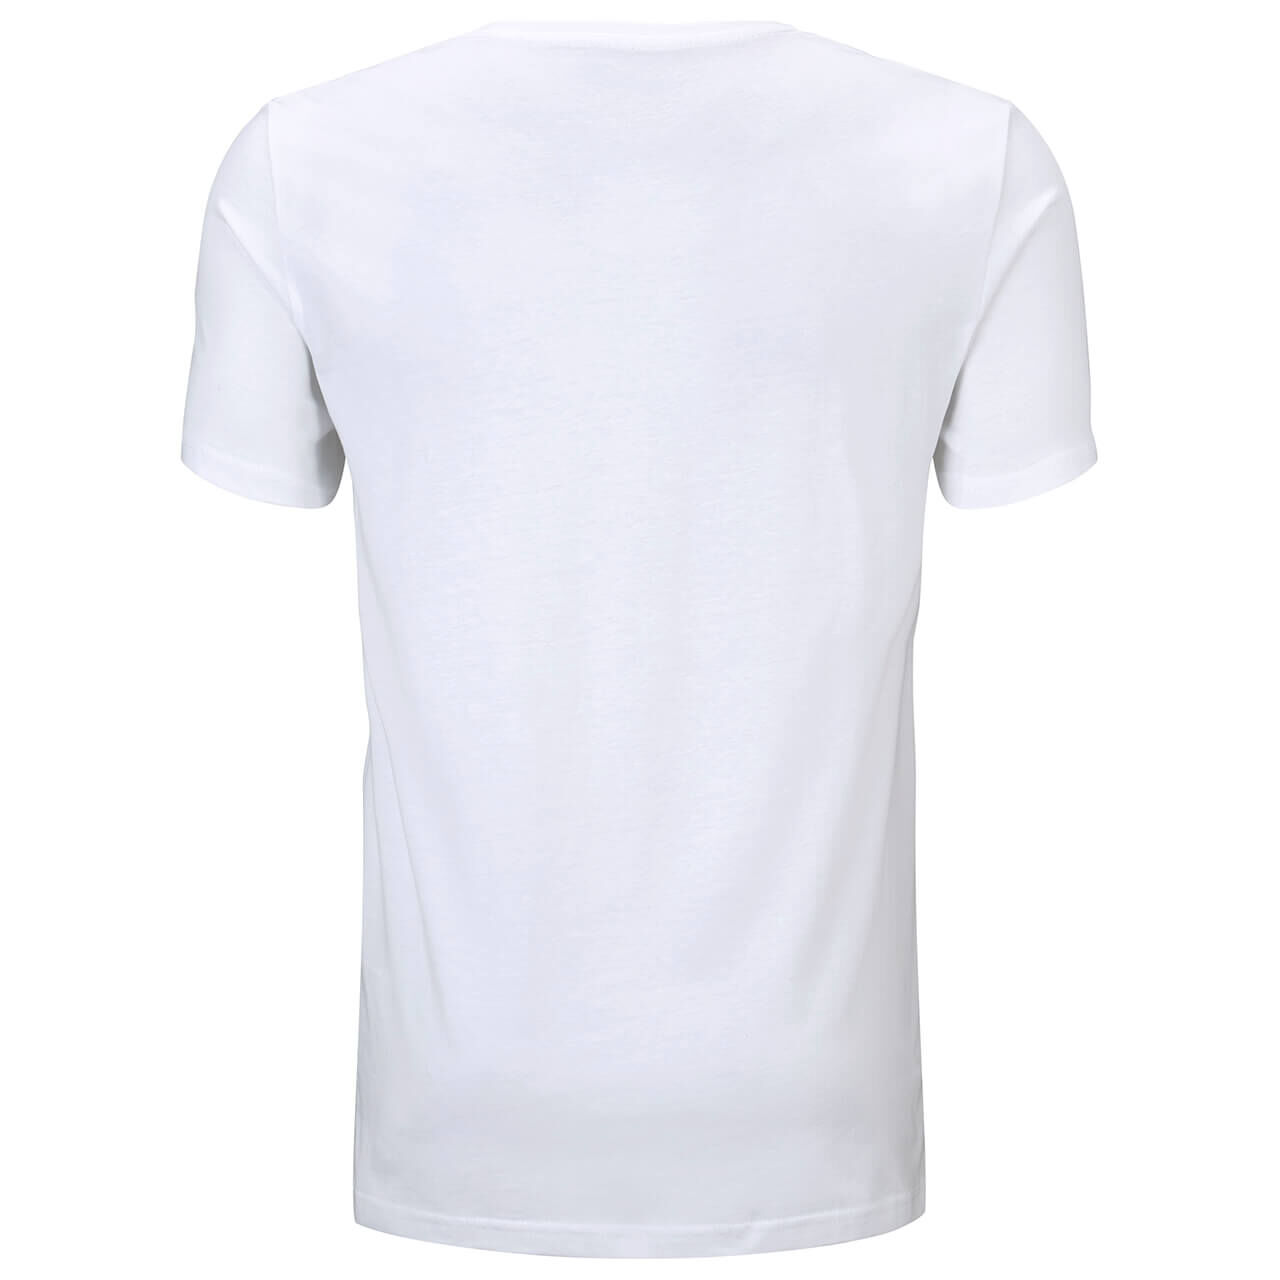 Tom Tailor T-Shirts für Herren in Weiß, FarbNr.: 20000